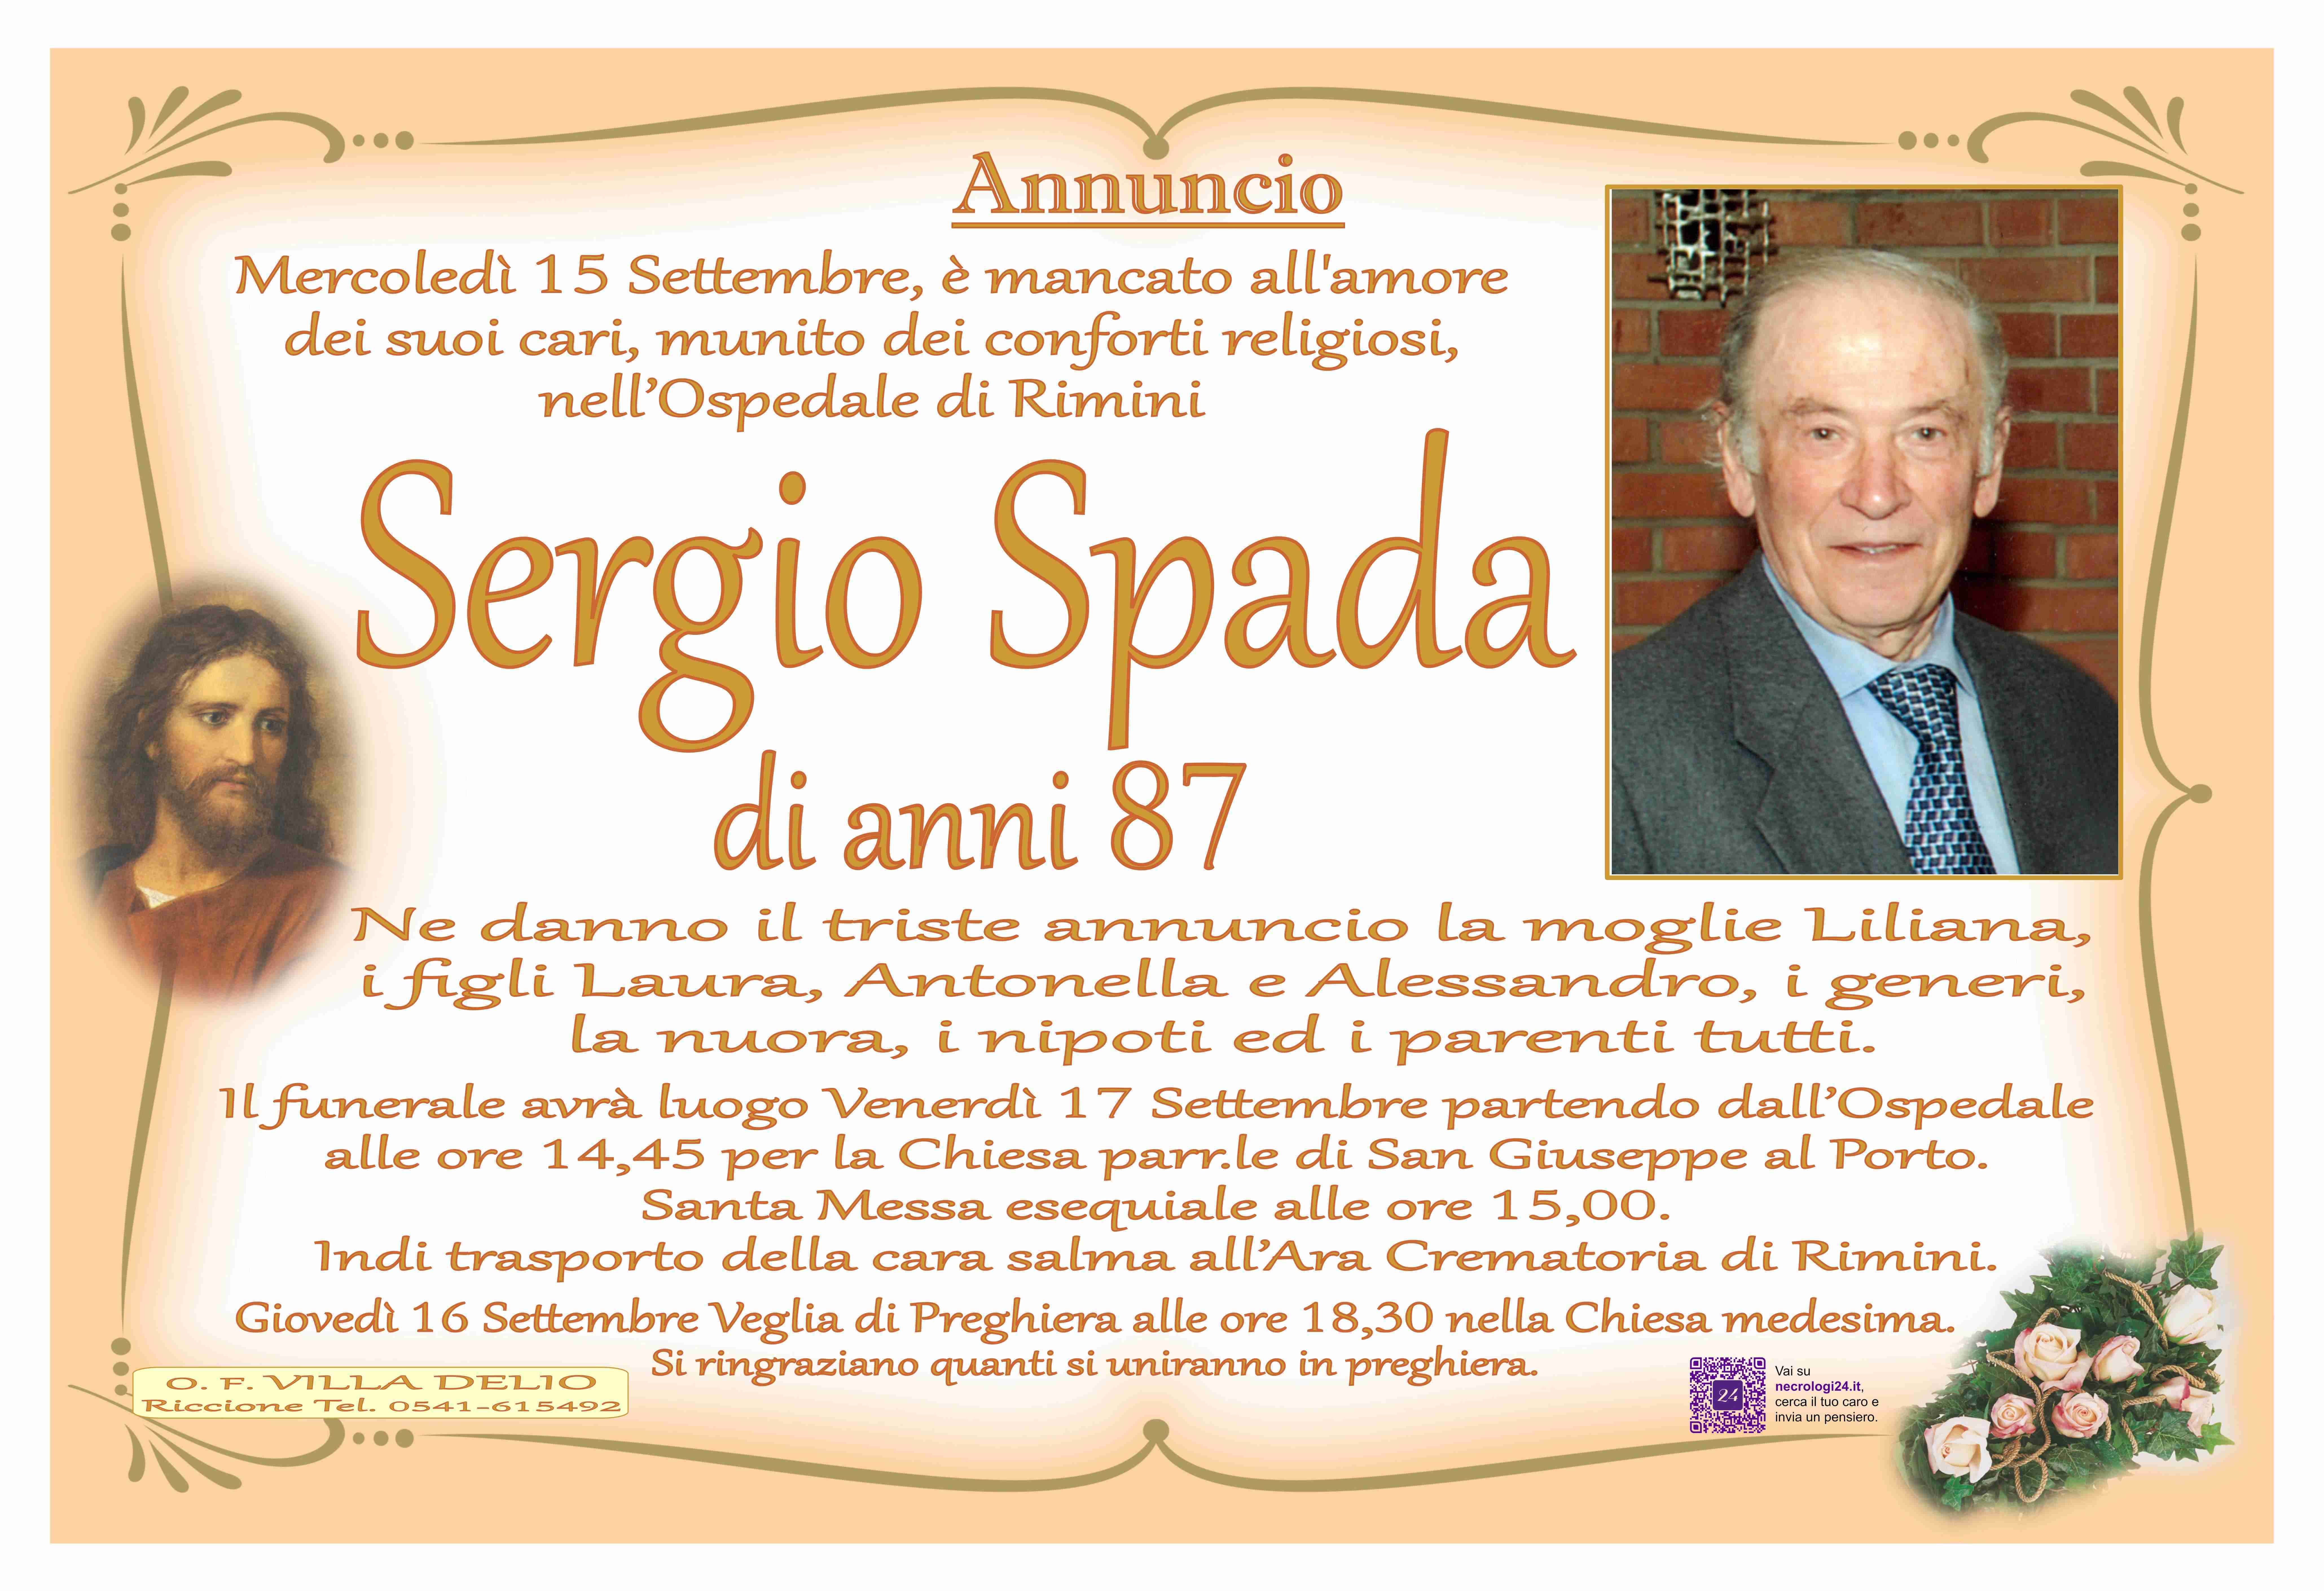 Sergio Spada